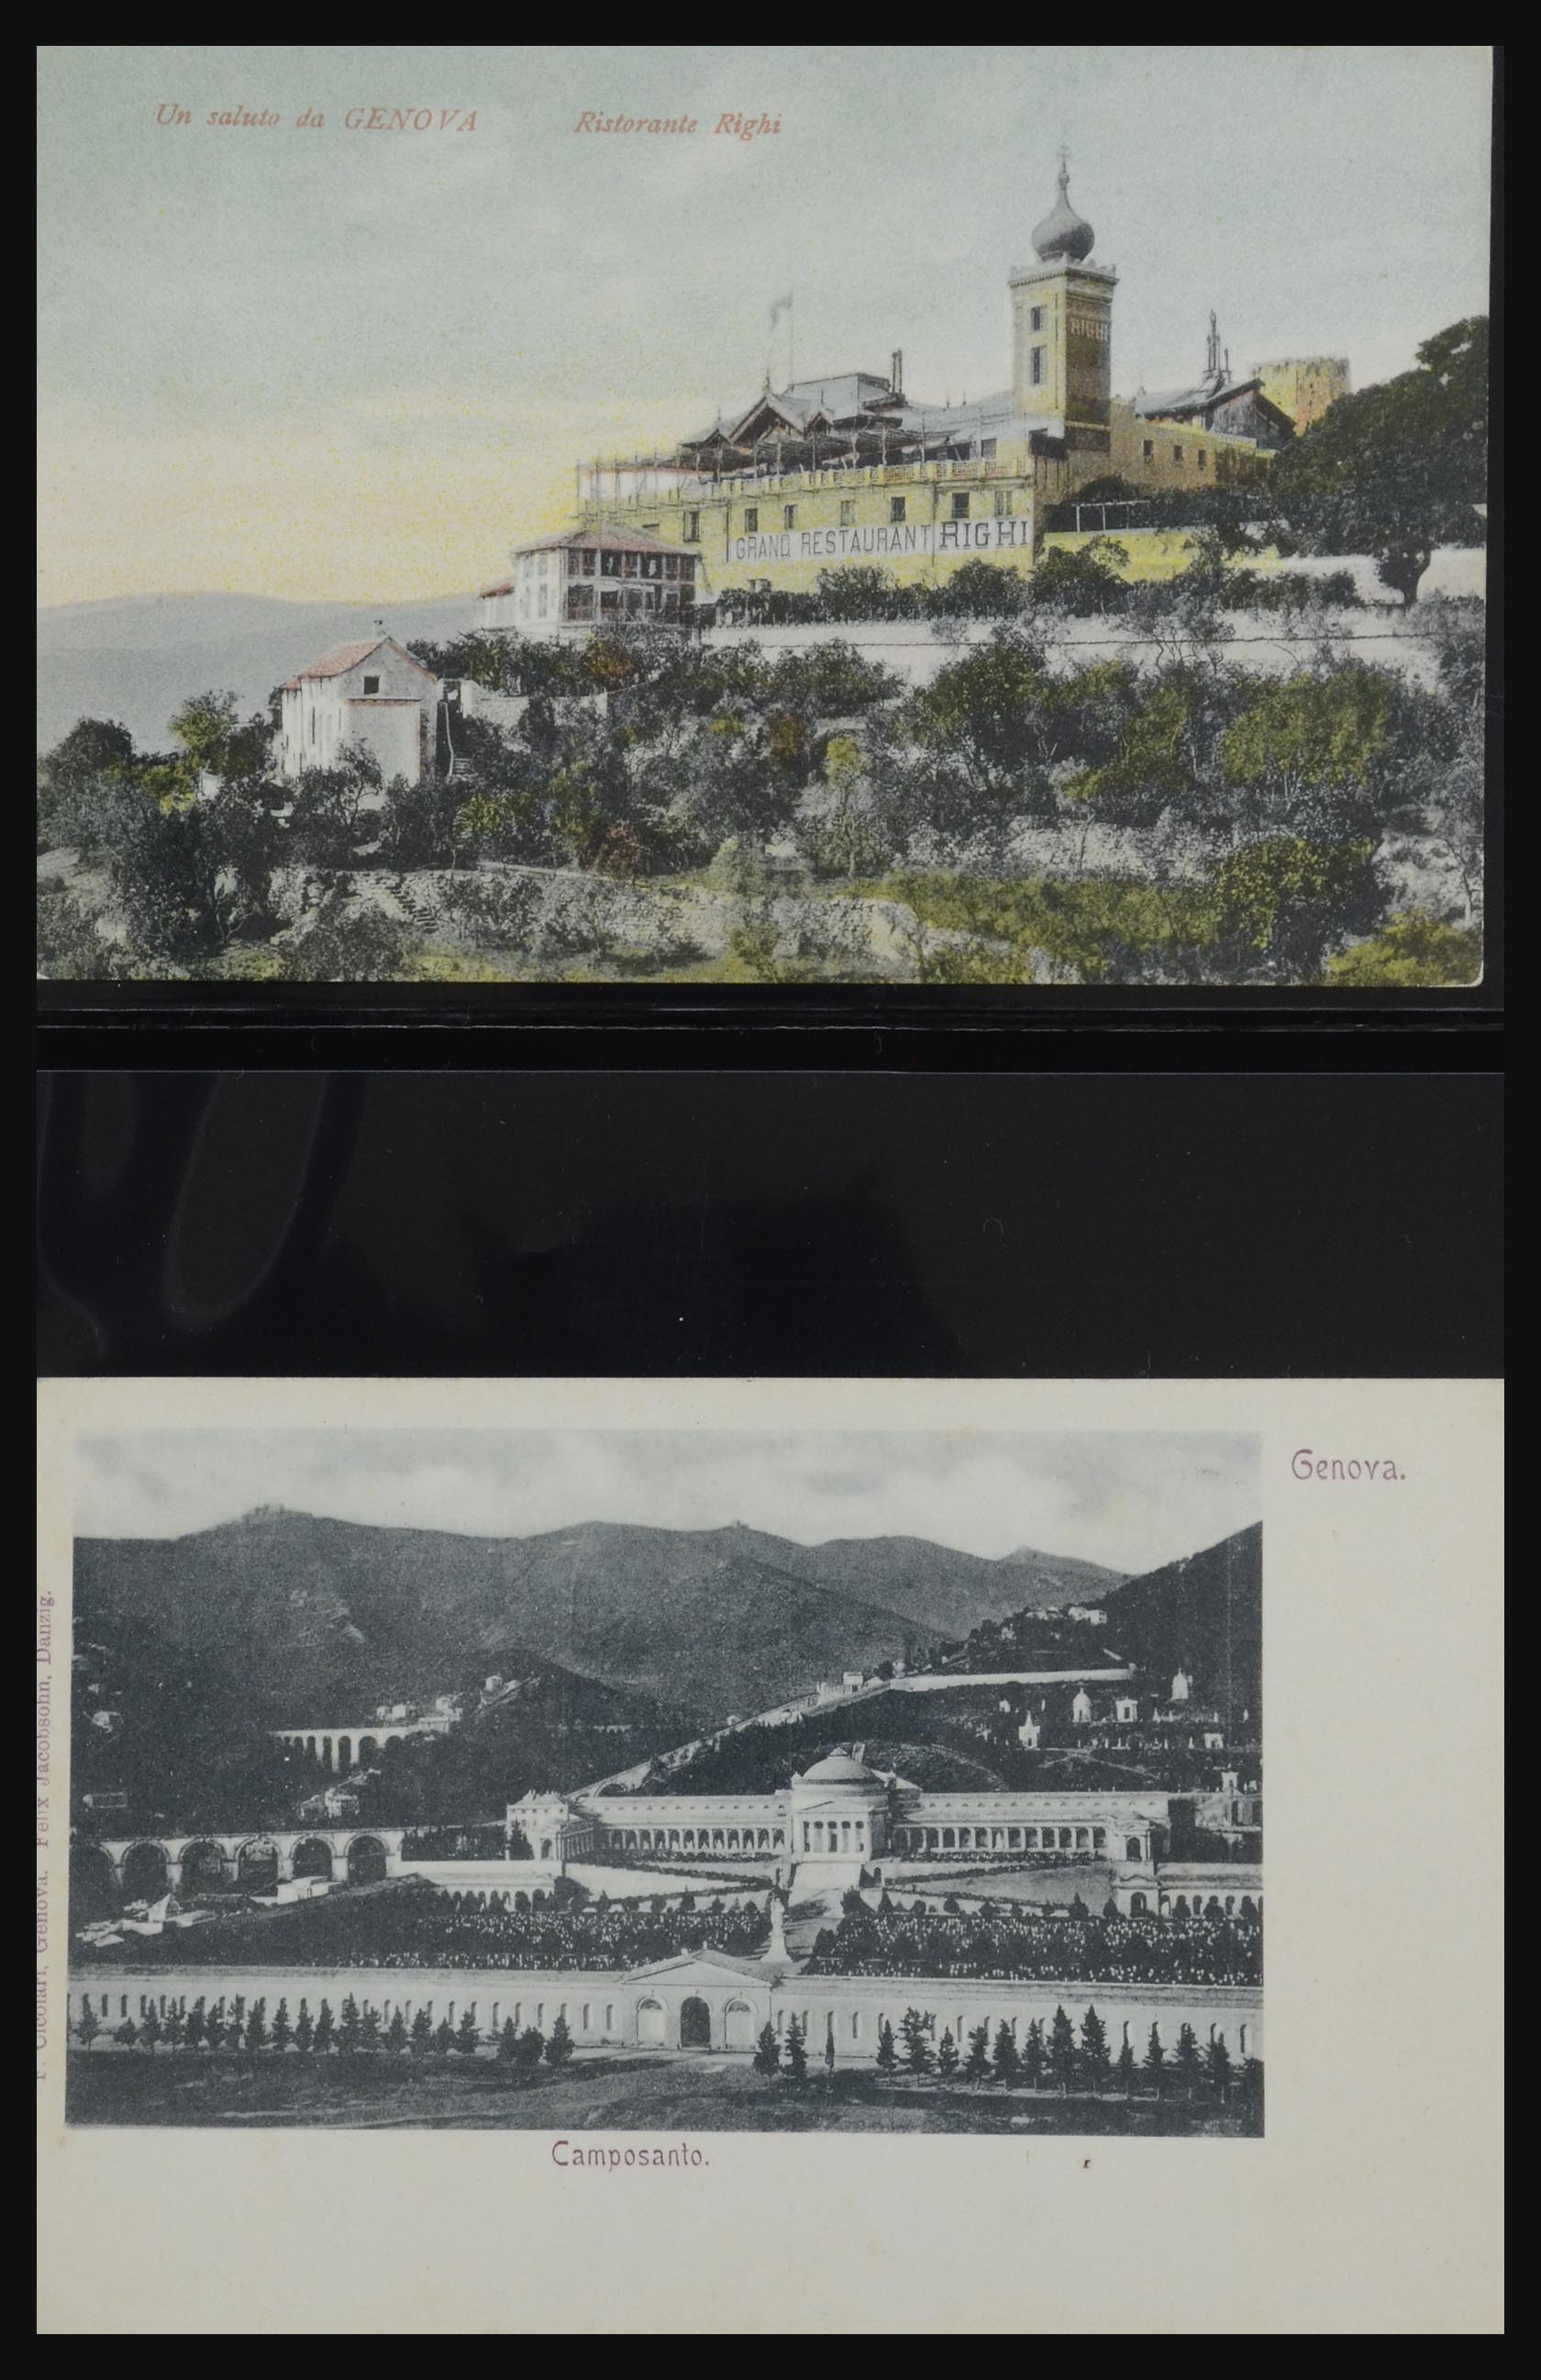 32255 0046 - 32255 Italië kaarten 1900-1945.